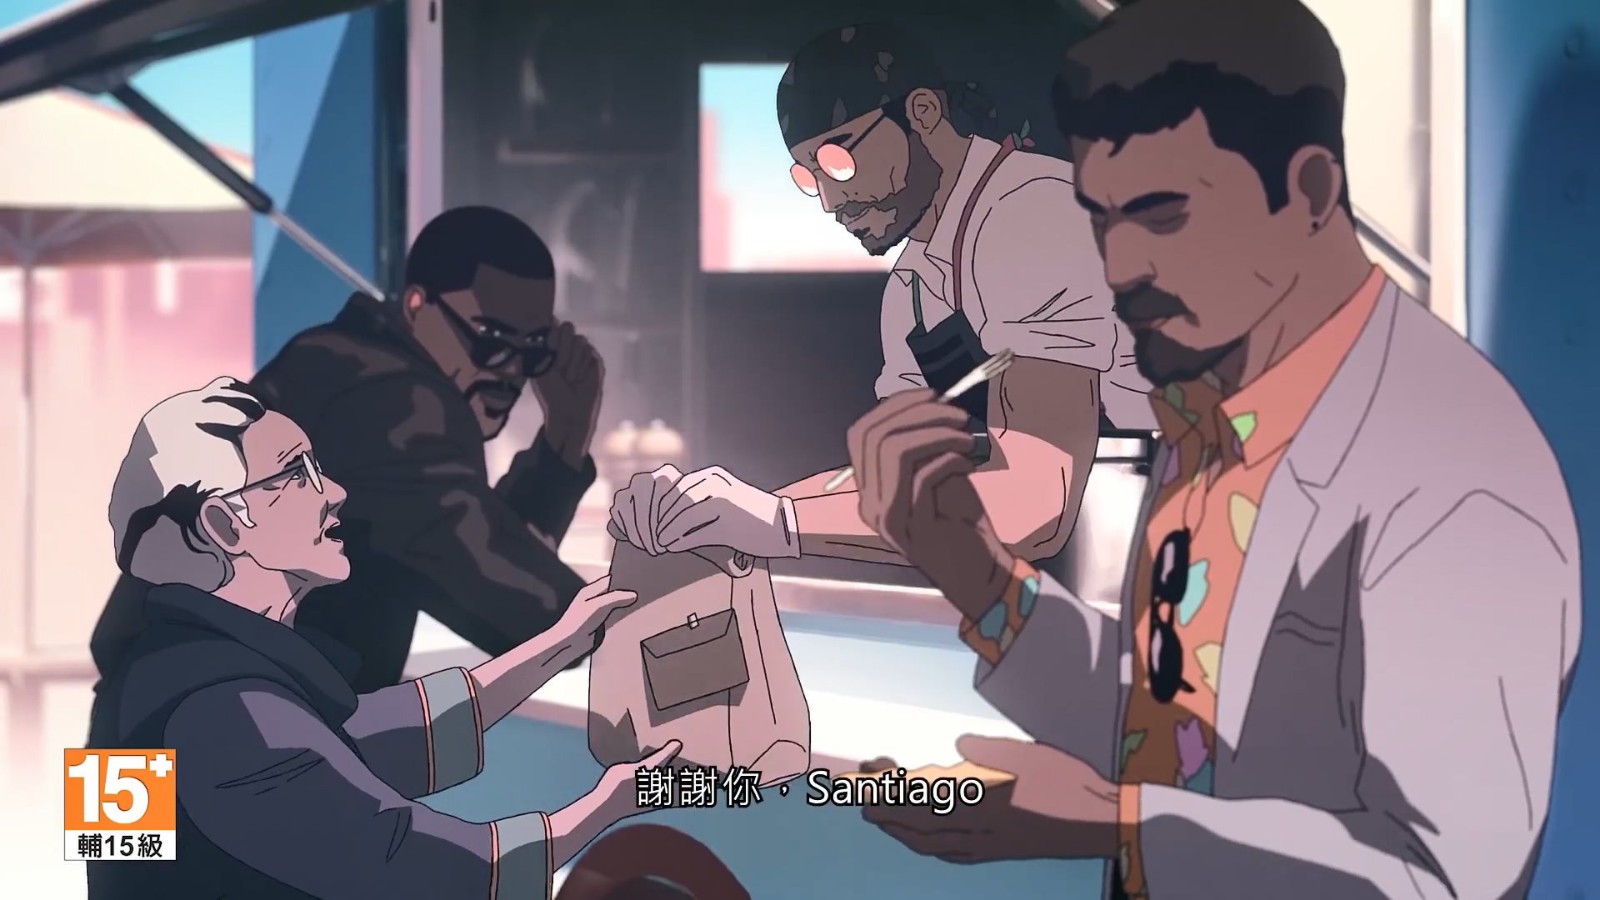 《彩虹六号》发布动画宣传片 讲述新干员Flores的故事